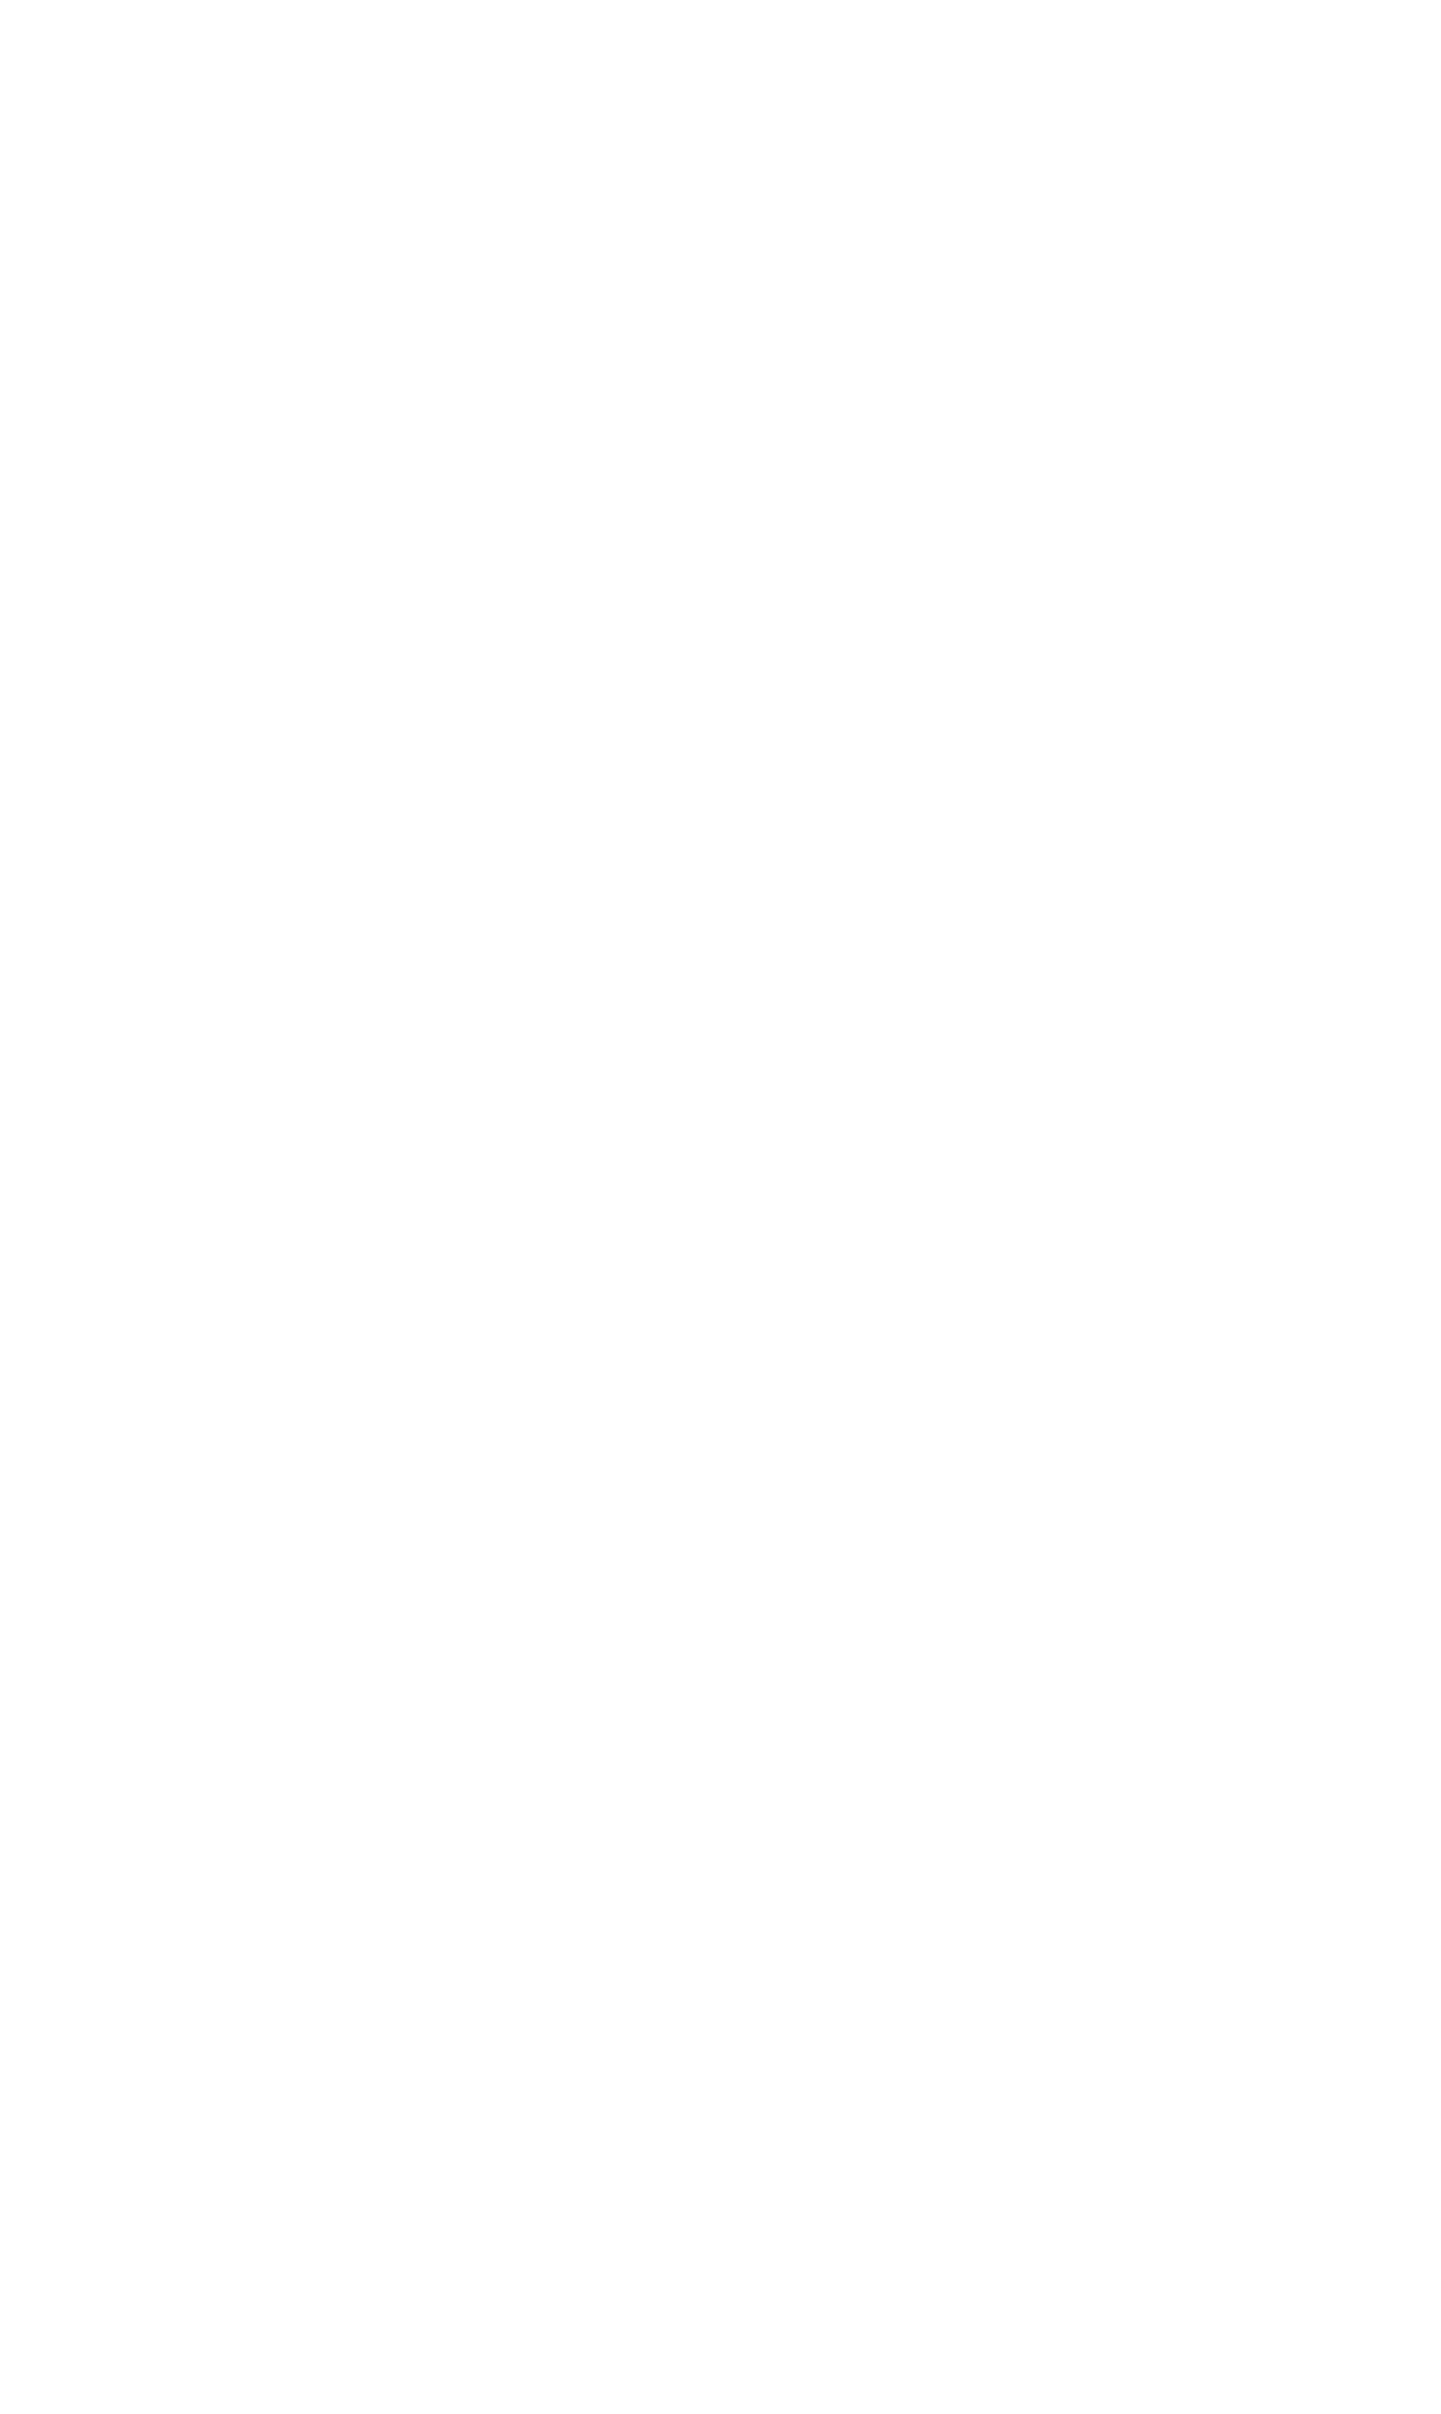 HSSA Clinic Media Kit | Humane Society of Southern Arizona